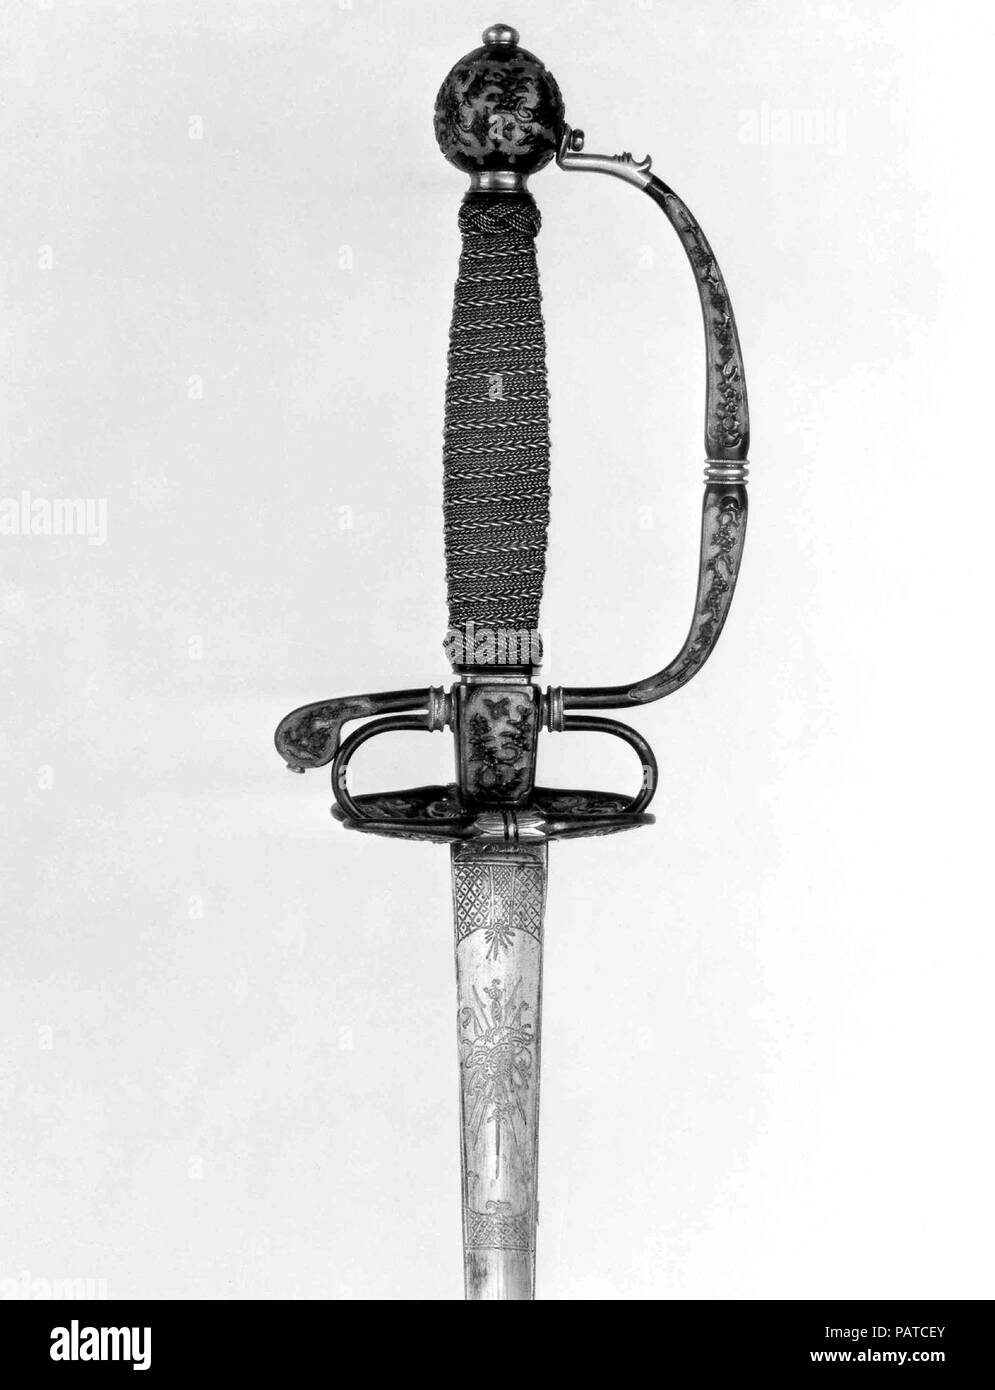 Smallsword Griff und Klinge. Kultur: hilt, Japanisch, möglicherweise Dejima; Blade, Europäische. Abmessungen: Griff (a); L. ca. 7 in. (17,8 cm); W. ca. 4 in. (10,2 cm); Wt. 5.3 oz. (150.3 g); Blade (b); L.40 1/8 in. (101,9 cm); Wt. 5.5 oz. (155.9 g). Datum: Ca. 1730. Schwert hilts der Europäischen Mode aus Shakudo, eine Legierung aus Kupfer und Gold an die blau-schwarze Farbe patiniert, die in Japan für kleine dekorative Objekte wie Schwert Befestigungen verwendet wurde, waren vermutlich für die Niederländische Ostindien-Kompanie an Ihrem Trading Post gefertigt auf der japanischen Insel Deshima. Griff Elemente wie diese wurden die Stockfoto